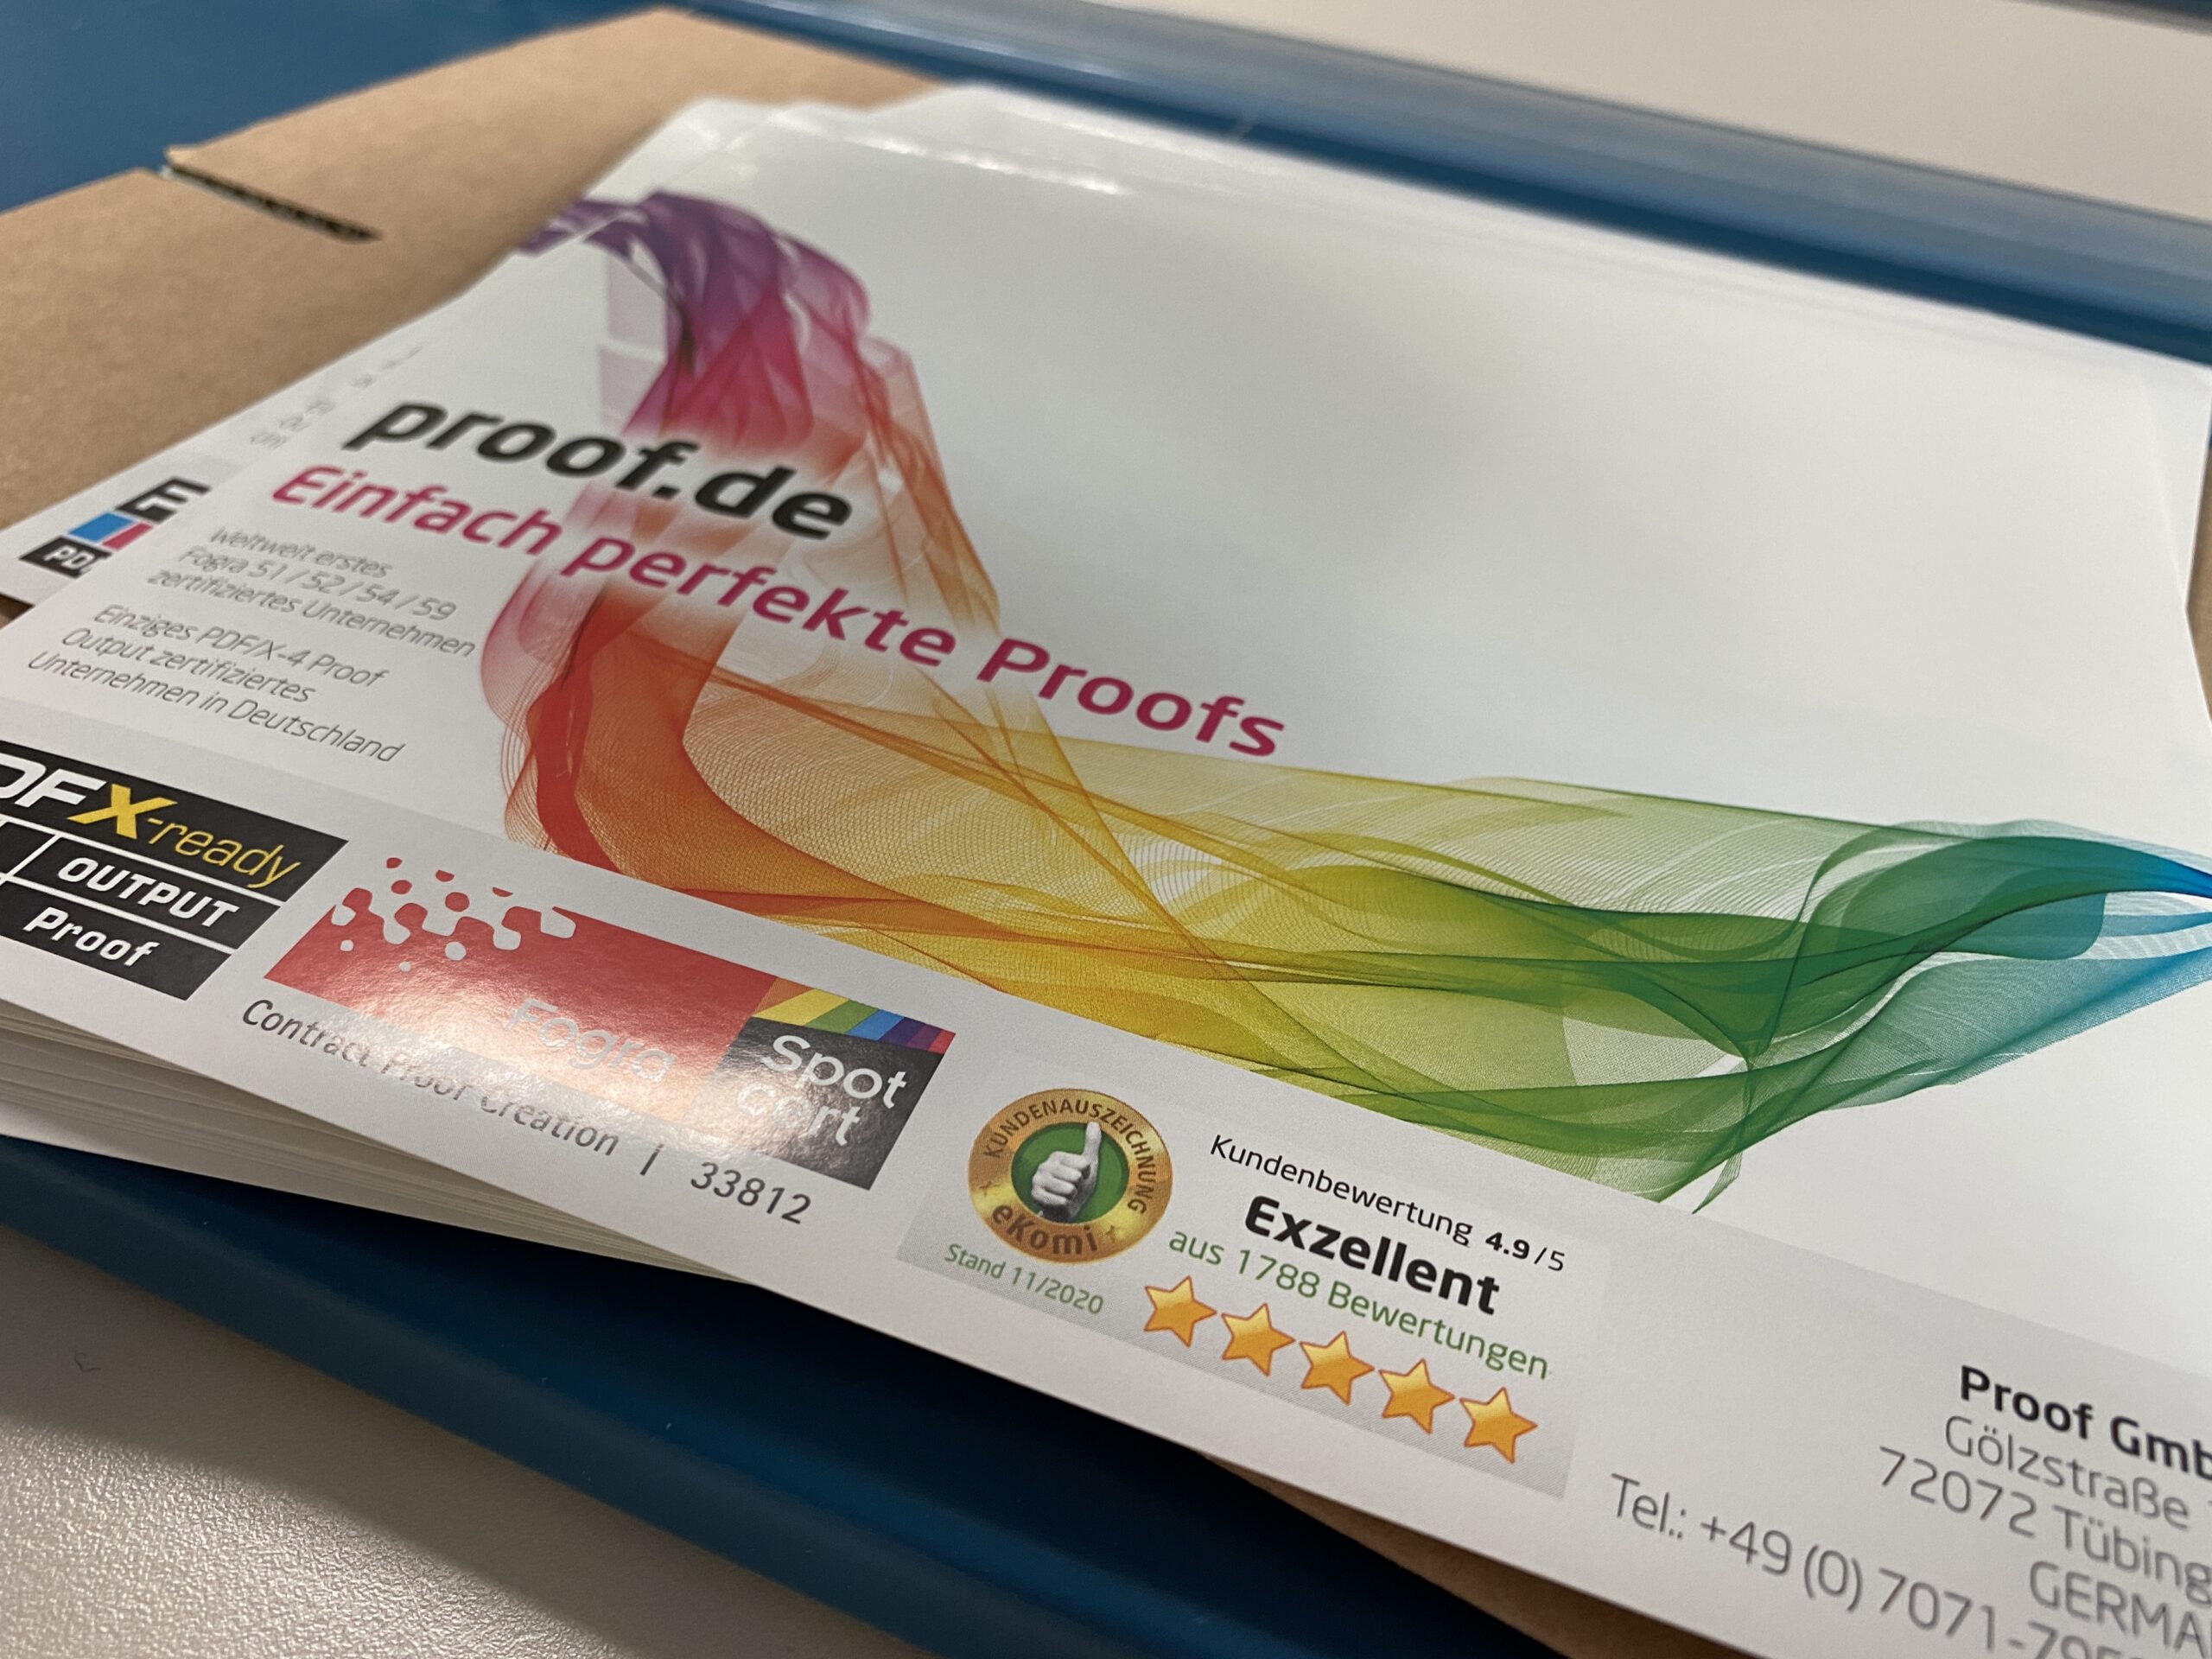 Proof.de: ekologiškesnės siuntimo etiketės, pagamintos iš popieriaus, o ne iš plastiko